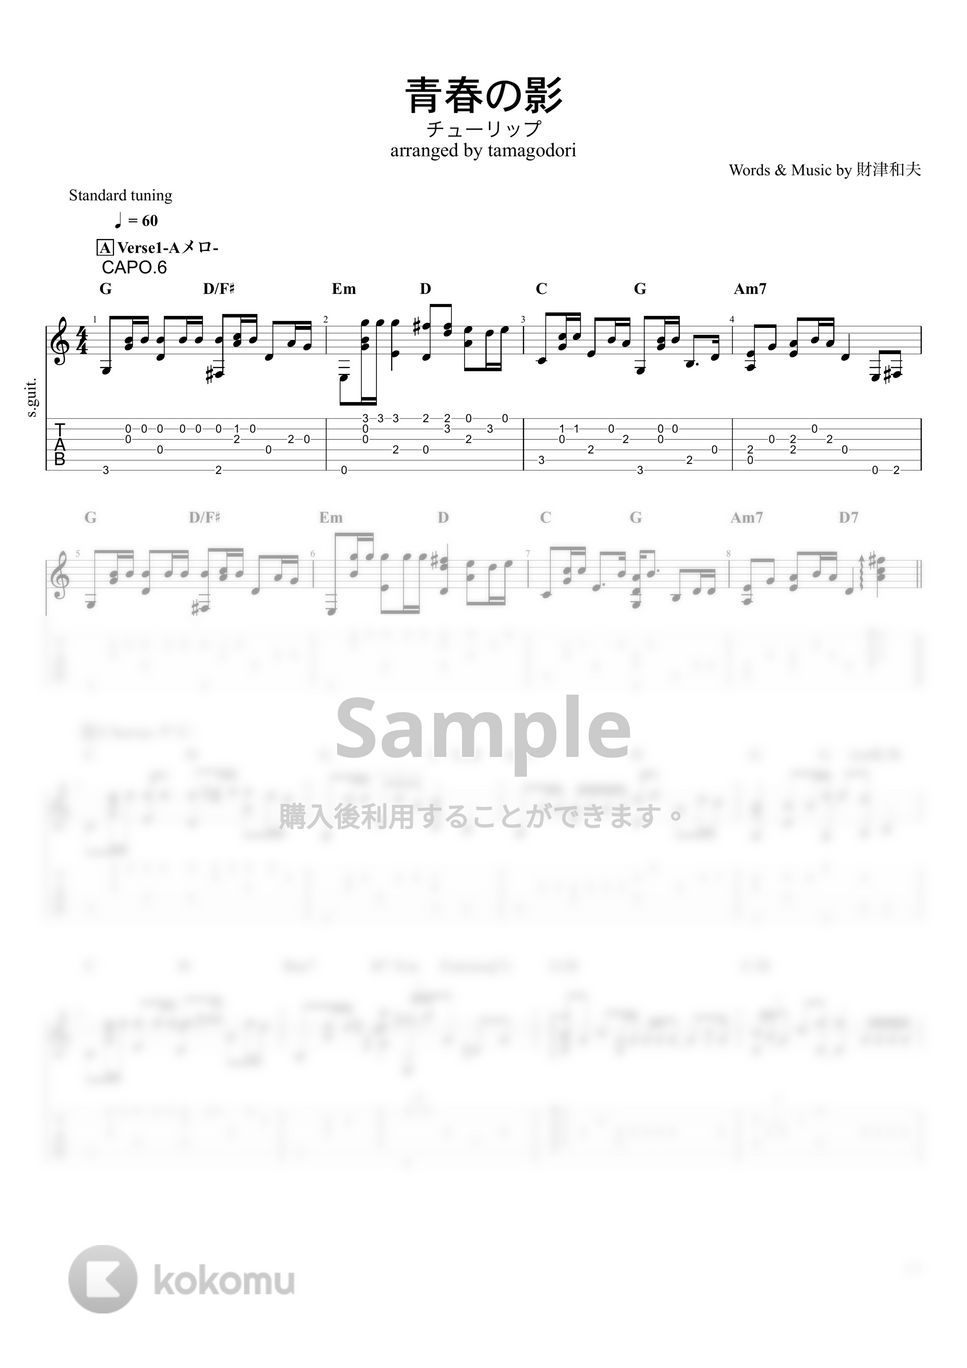 チューリップ - 青春の影 (ソロギター) by たまごどり